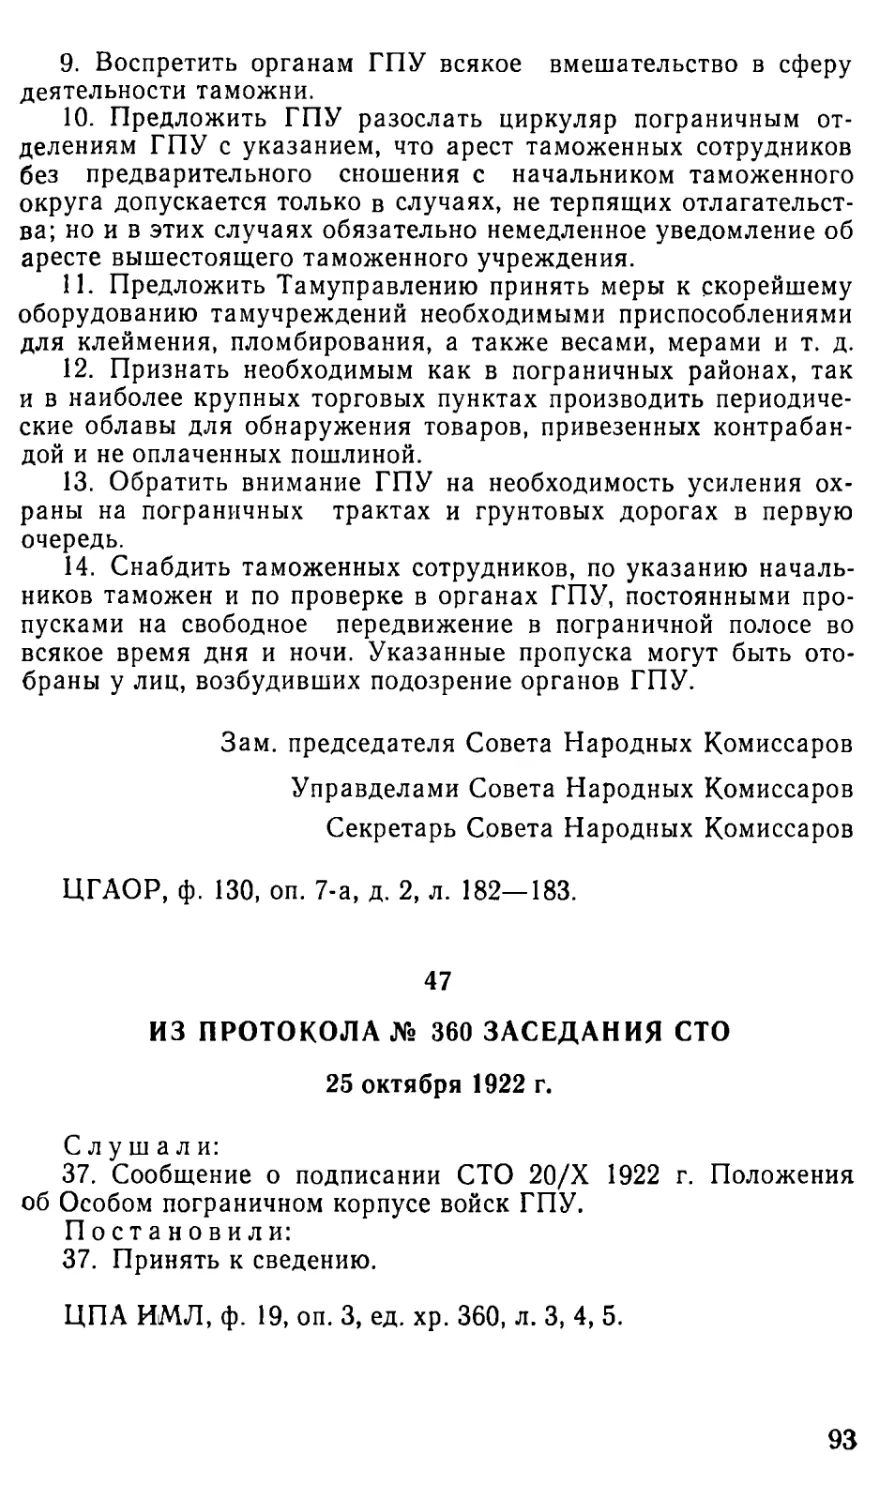 47. Из протокола № 360 заседания СТО. 25 октября 1922 г